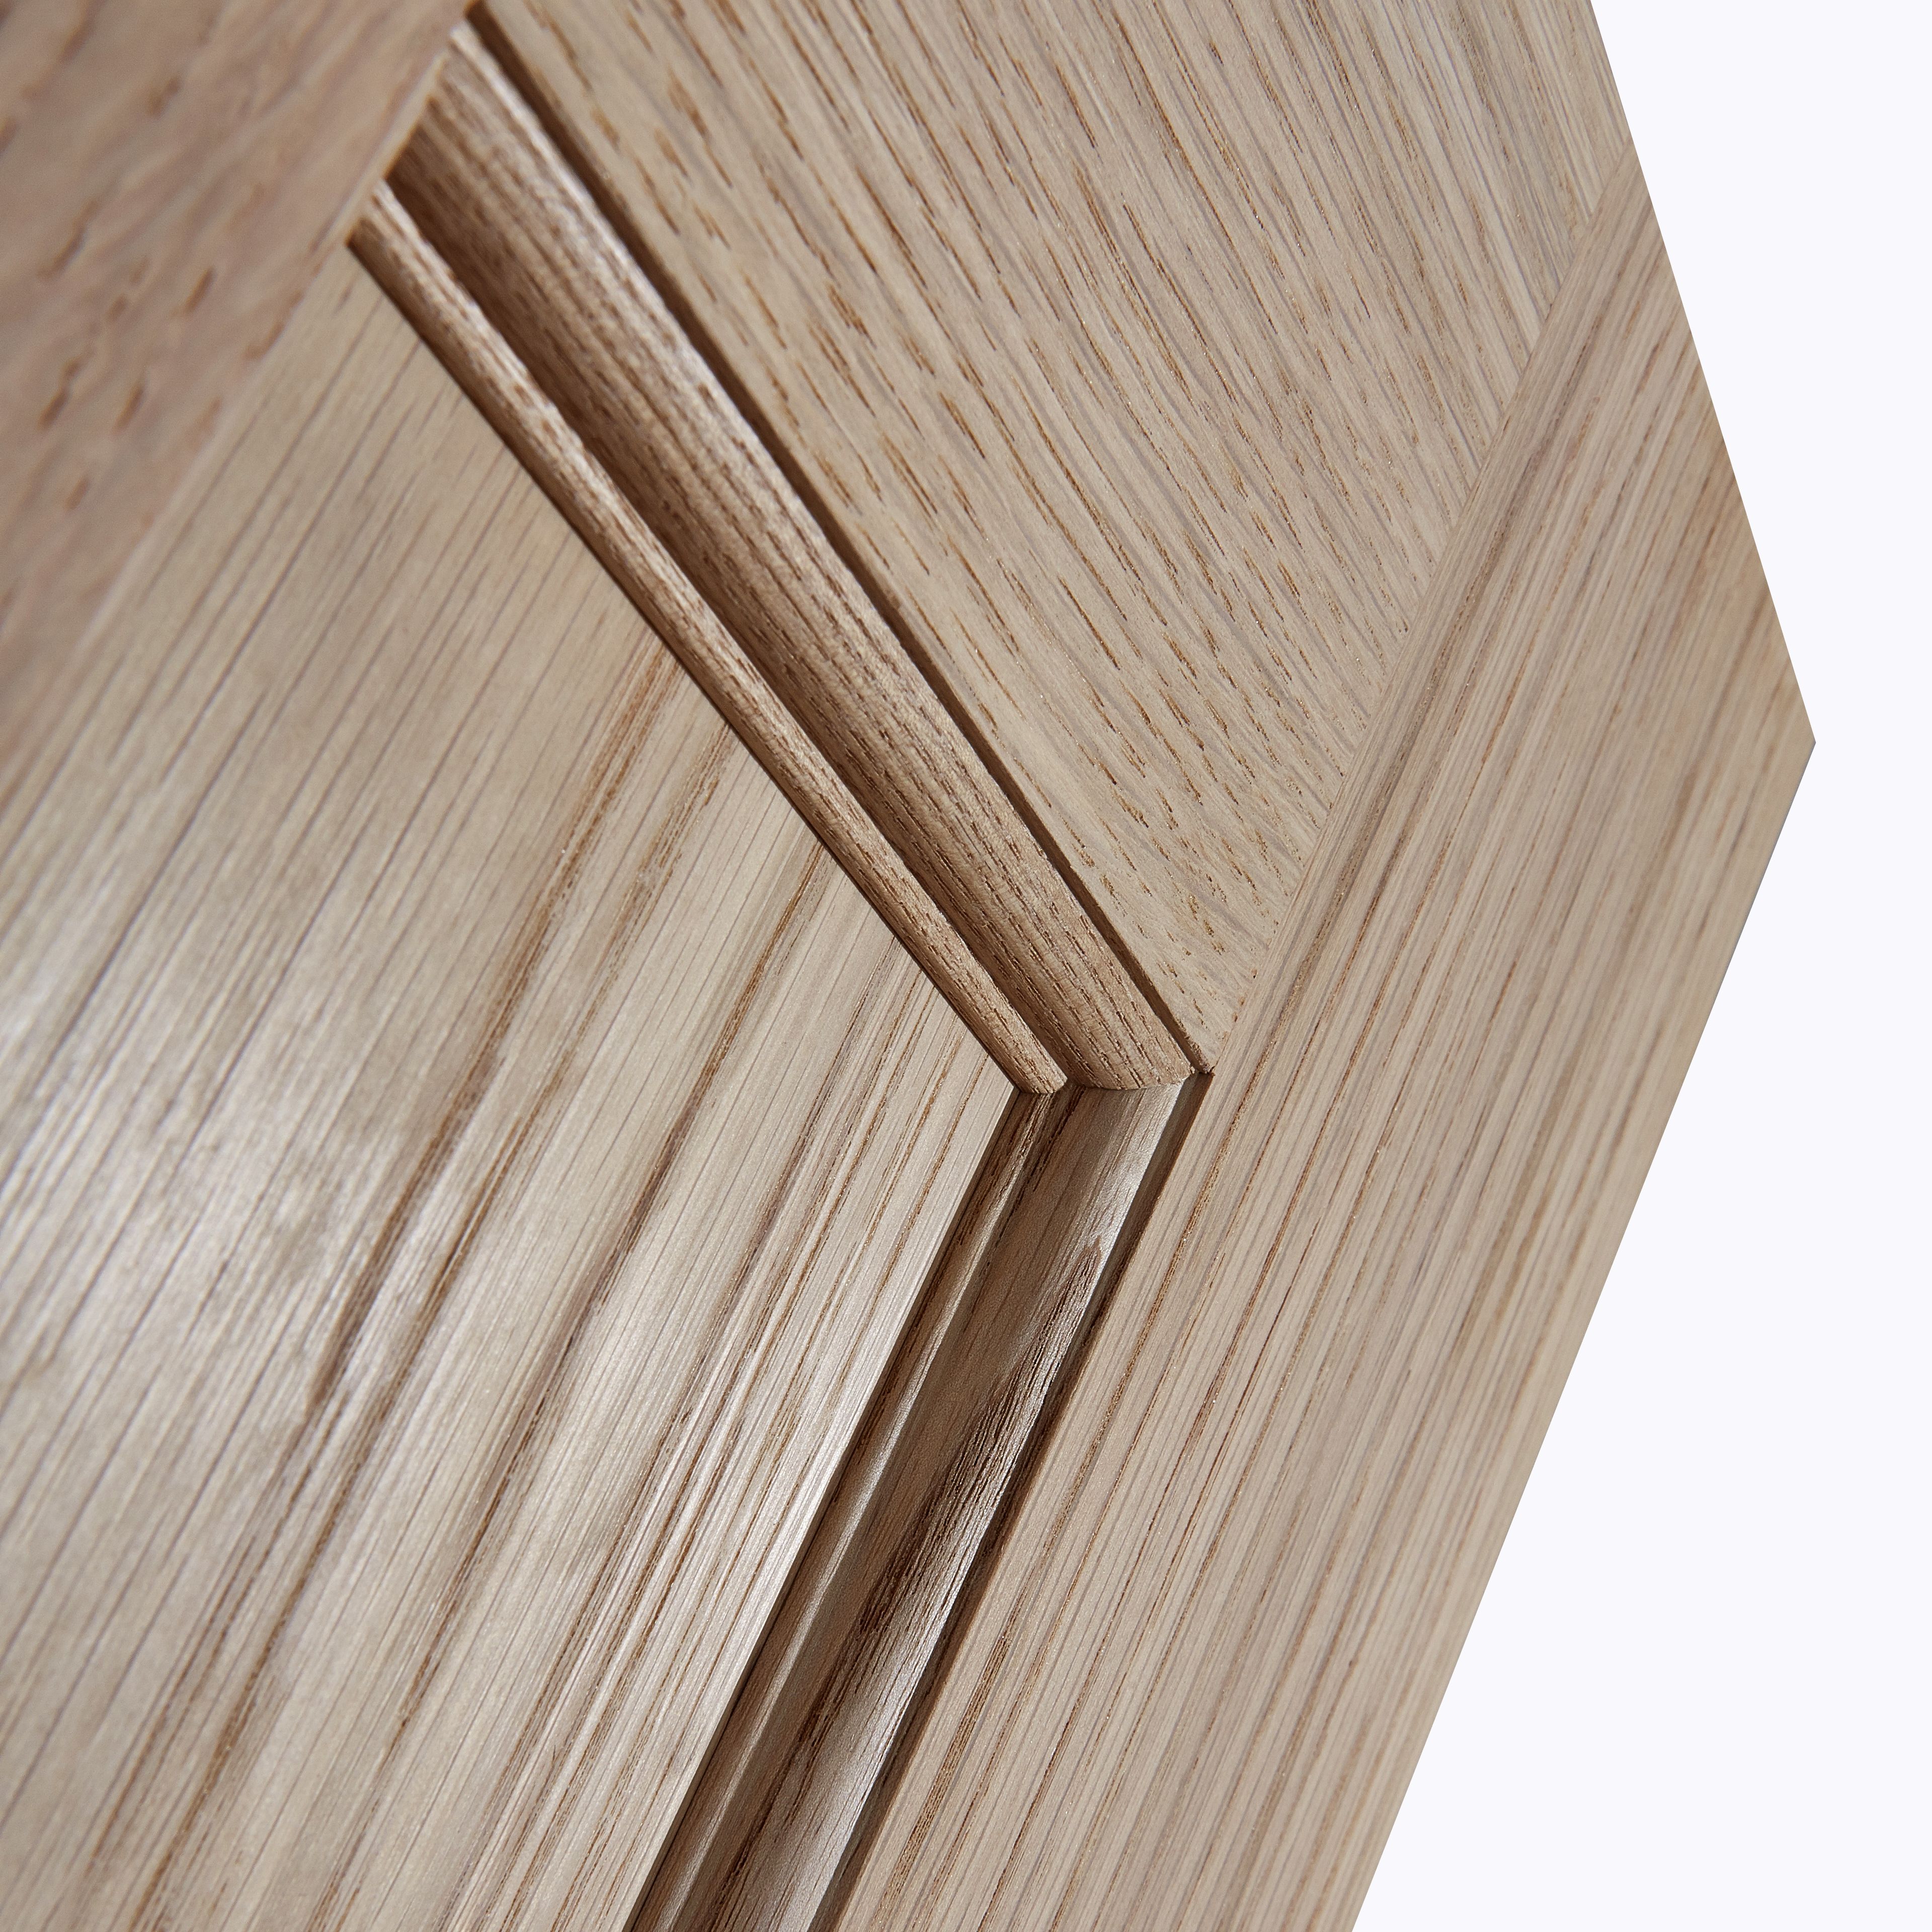 Vertical 3 panel Unglazed Oak veneer Internal Door, (H)1981mm (W)838mm (T)35mm